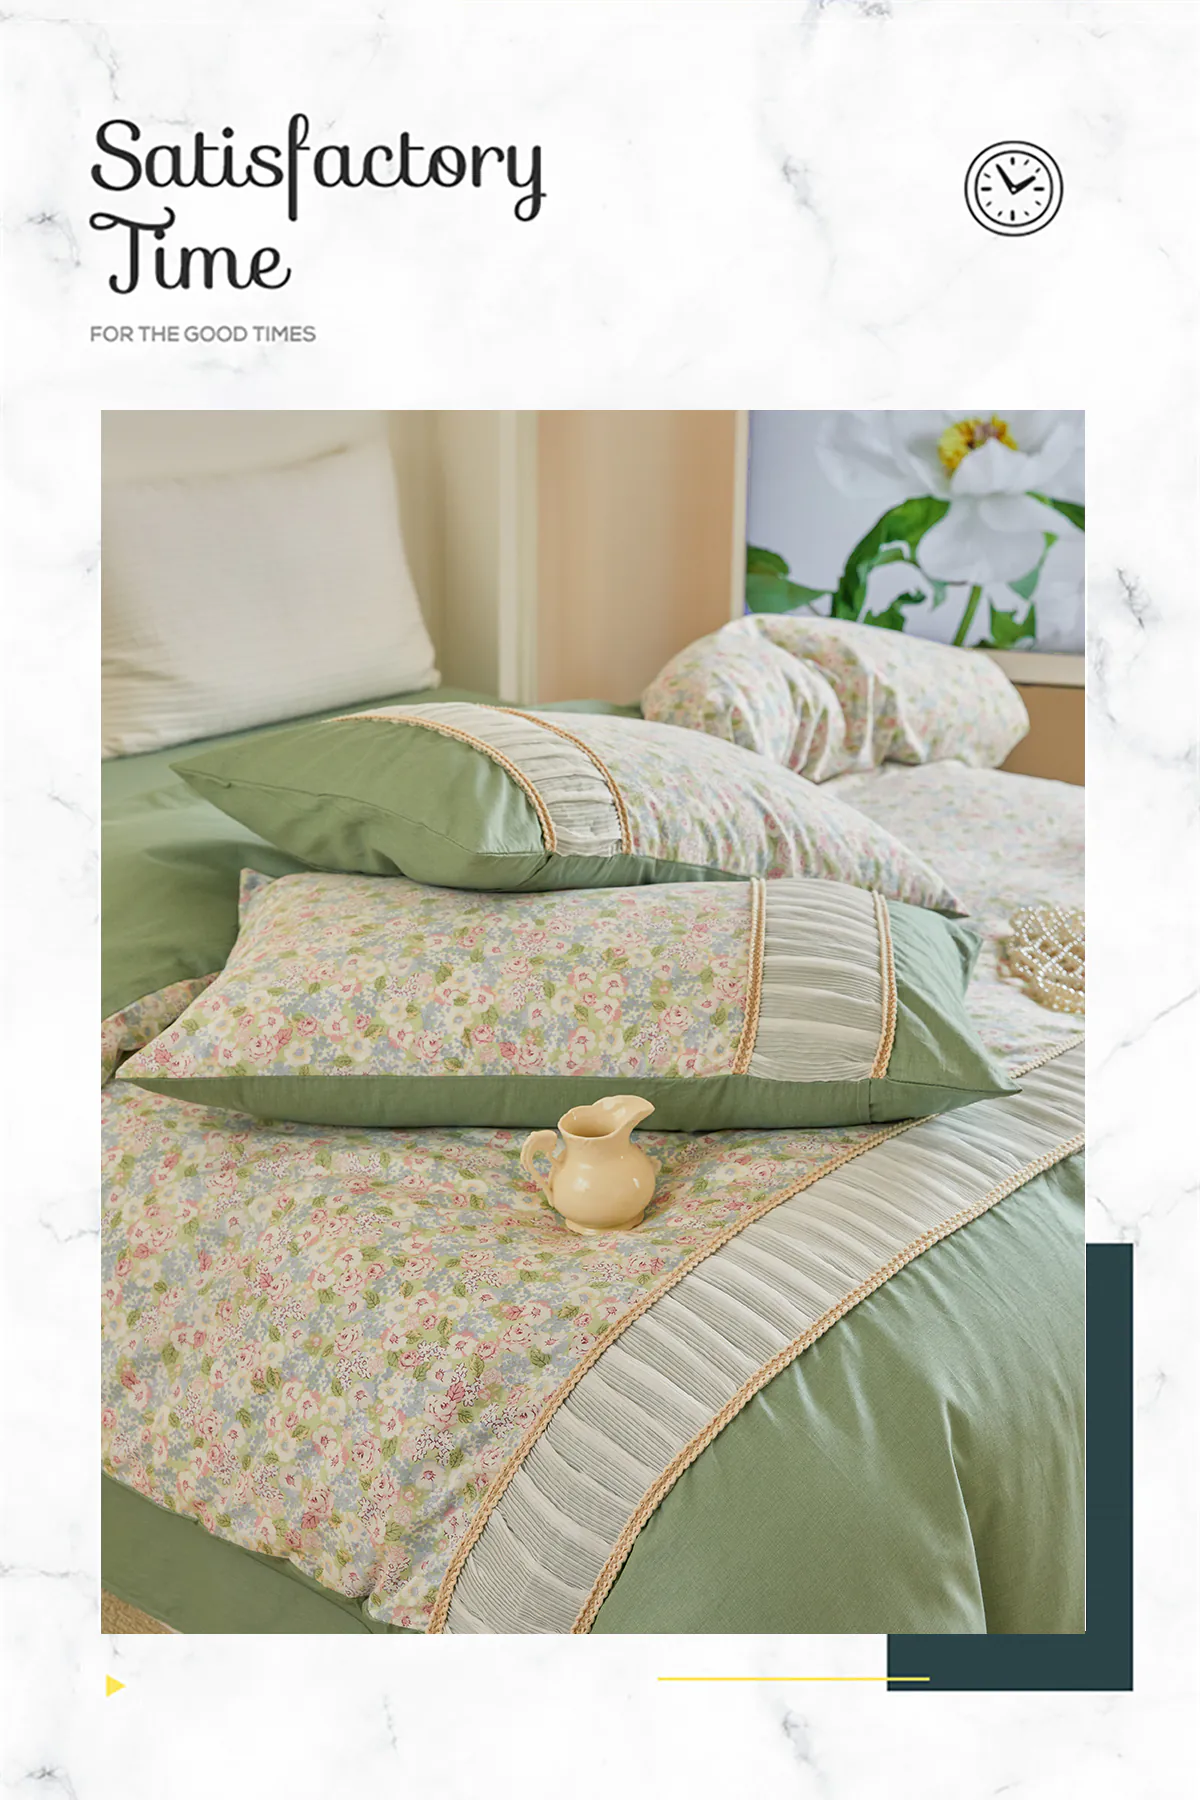 Retro-Princess-Style-100-Cotton-Floral-Duvet-Cover-Bedding-Set16